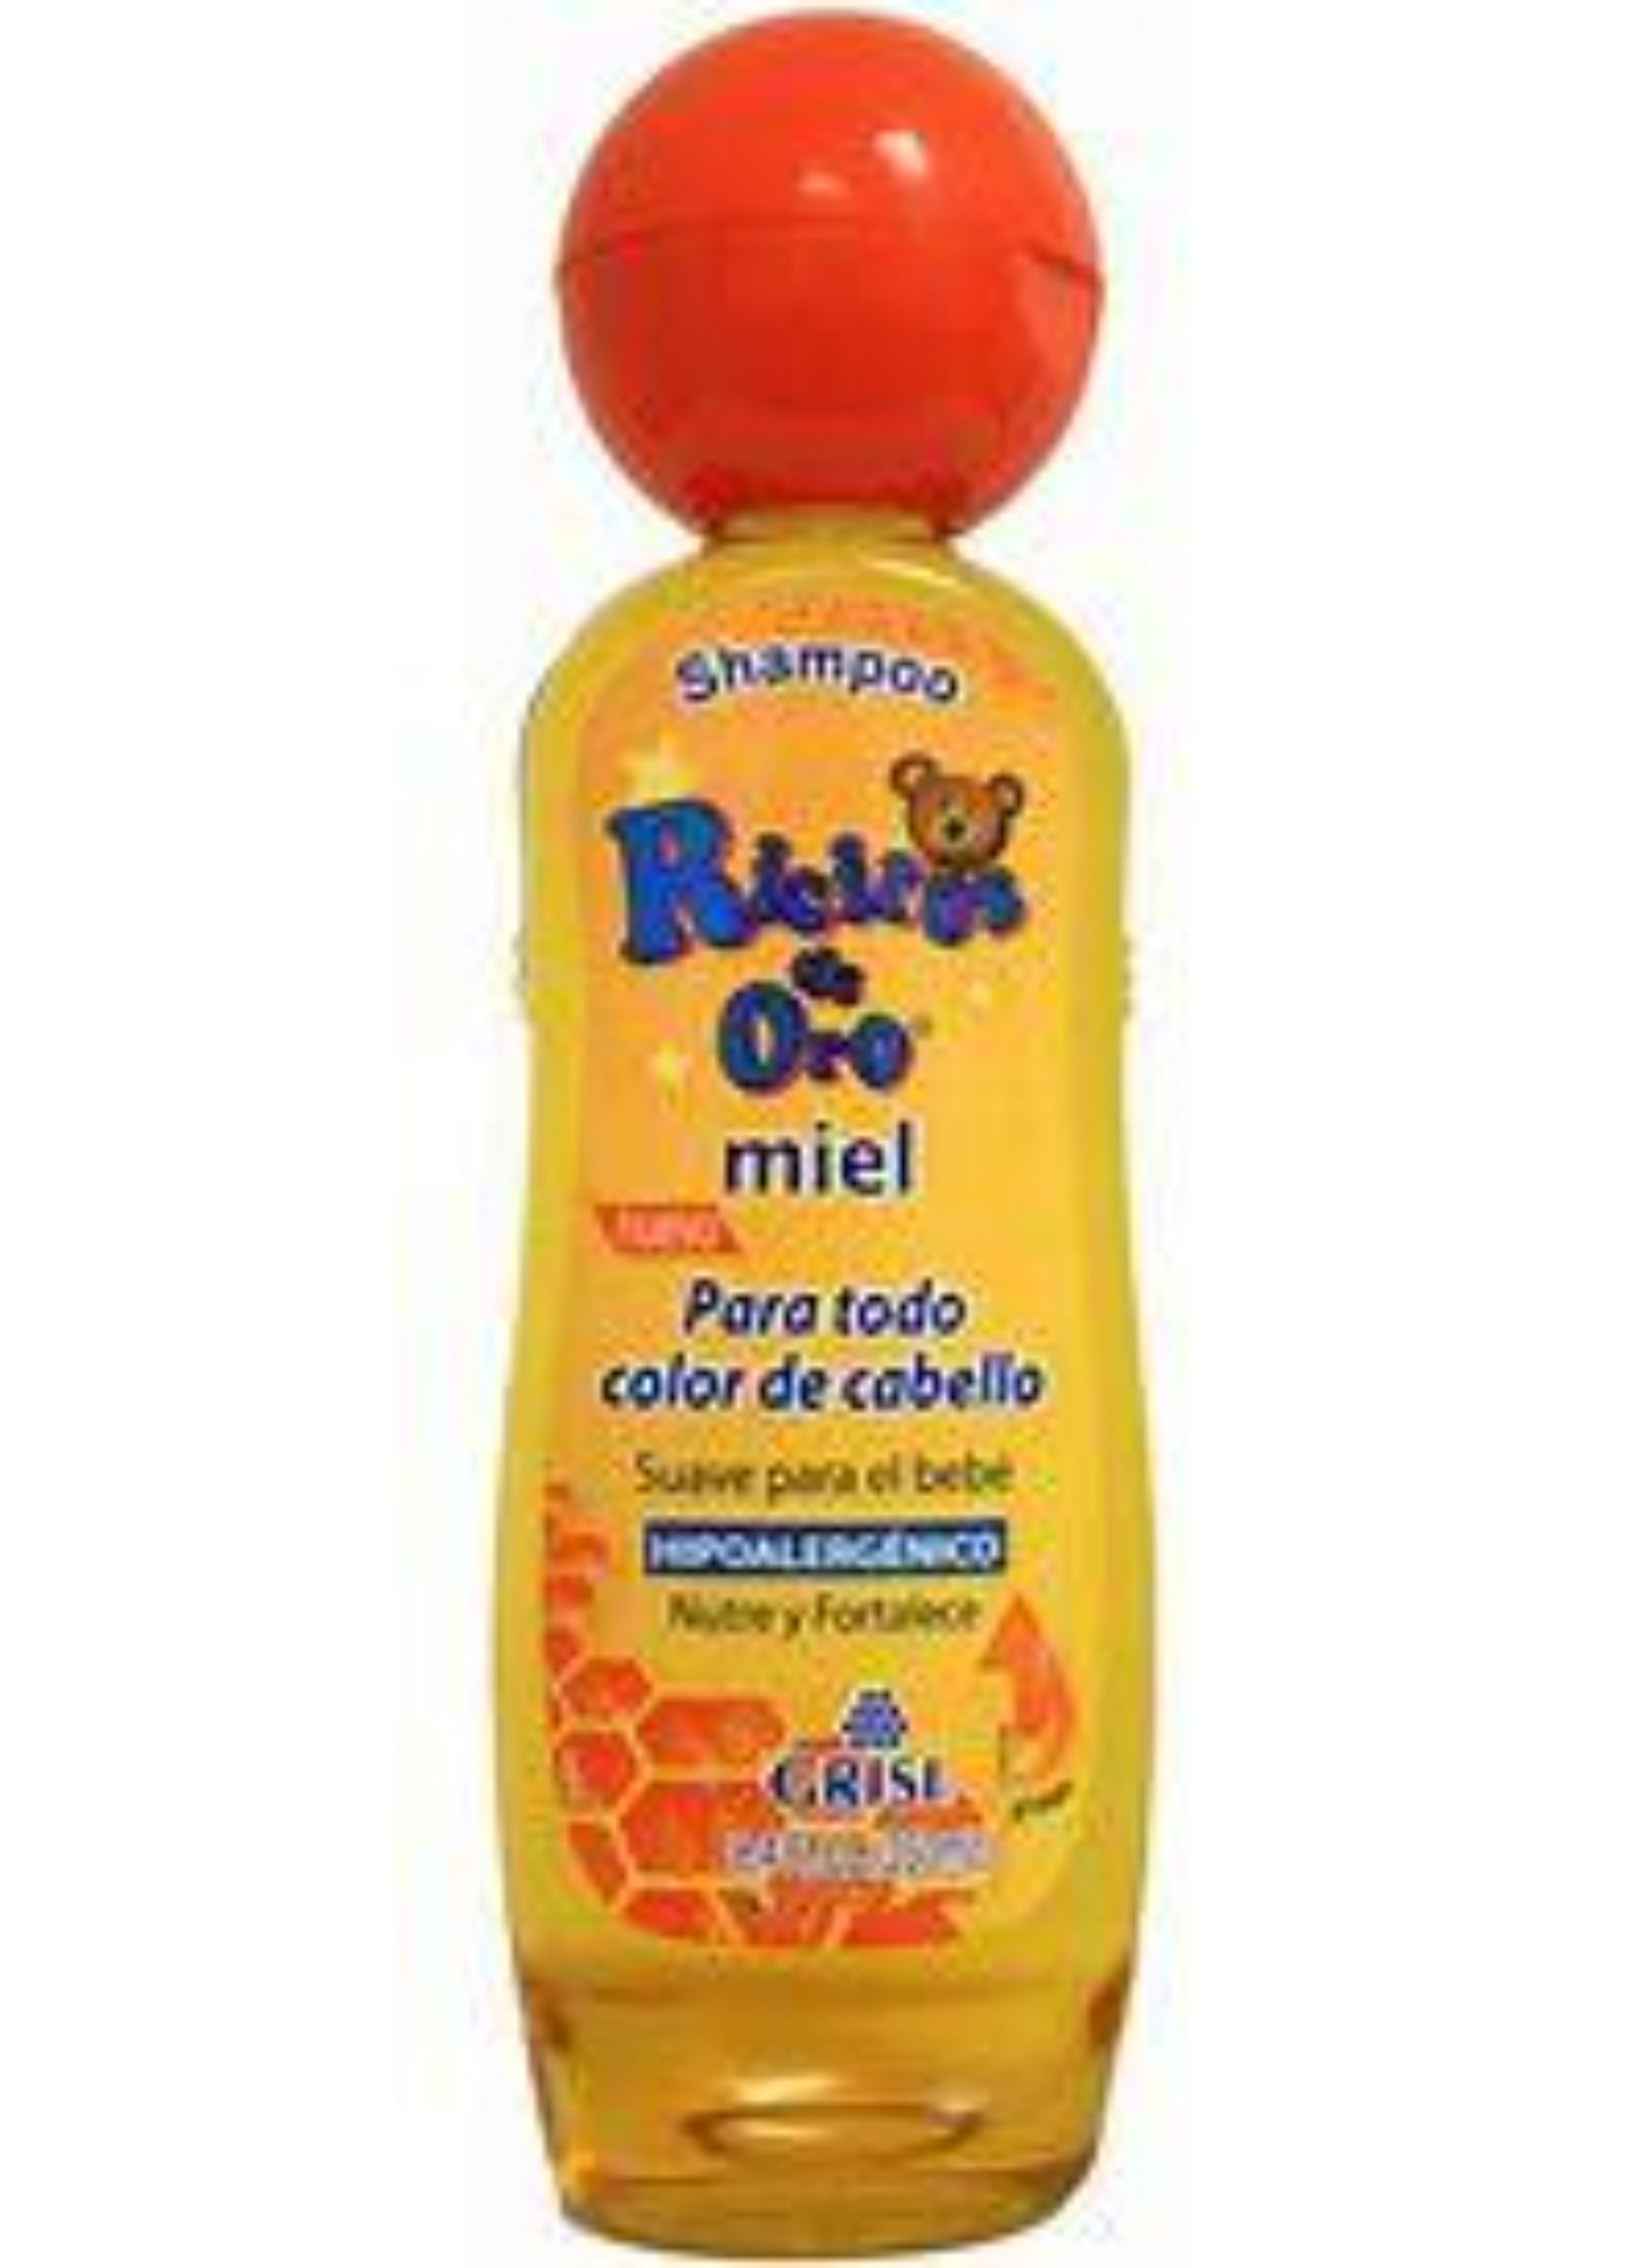 Grisi Ricitos de Oro Honey Shampoo 8.4 oz